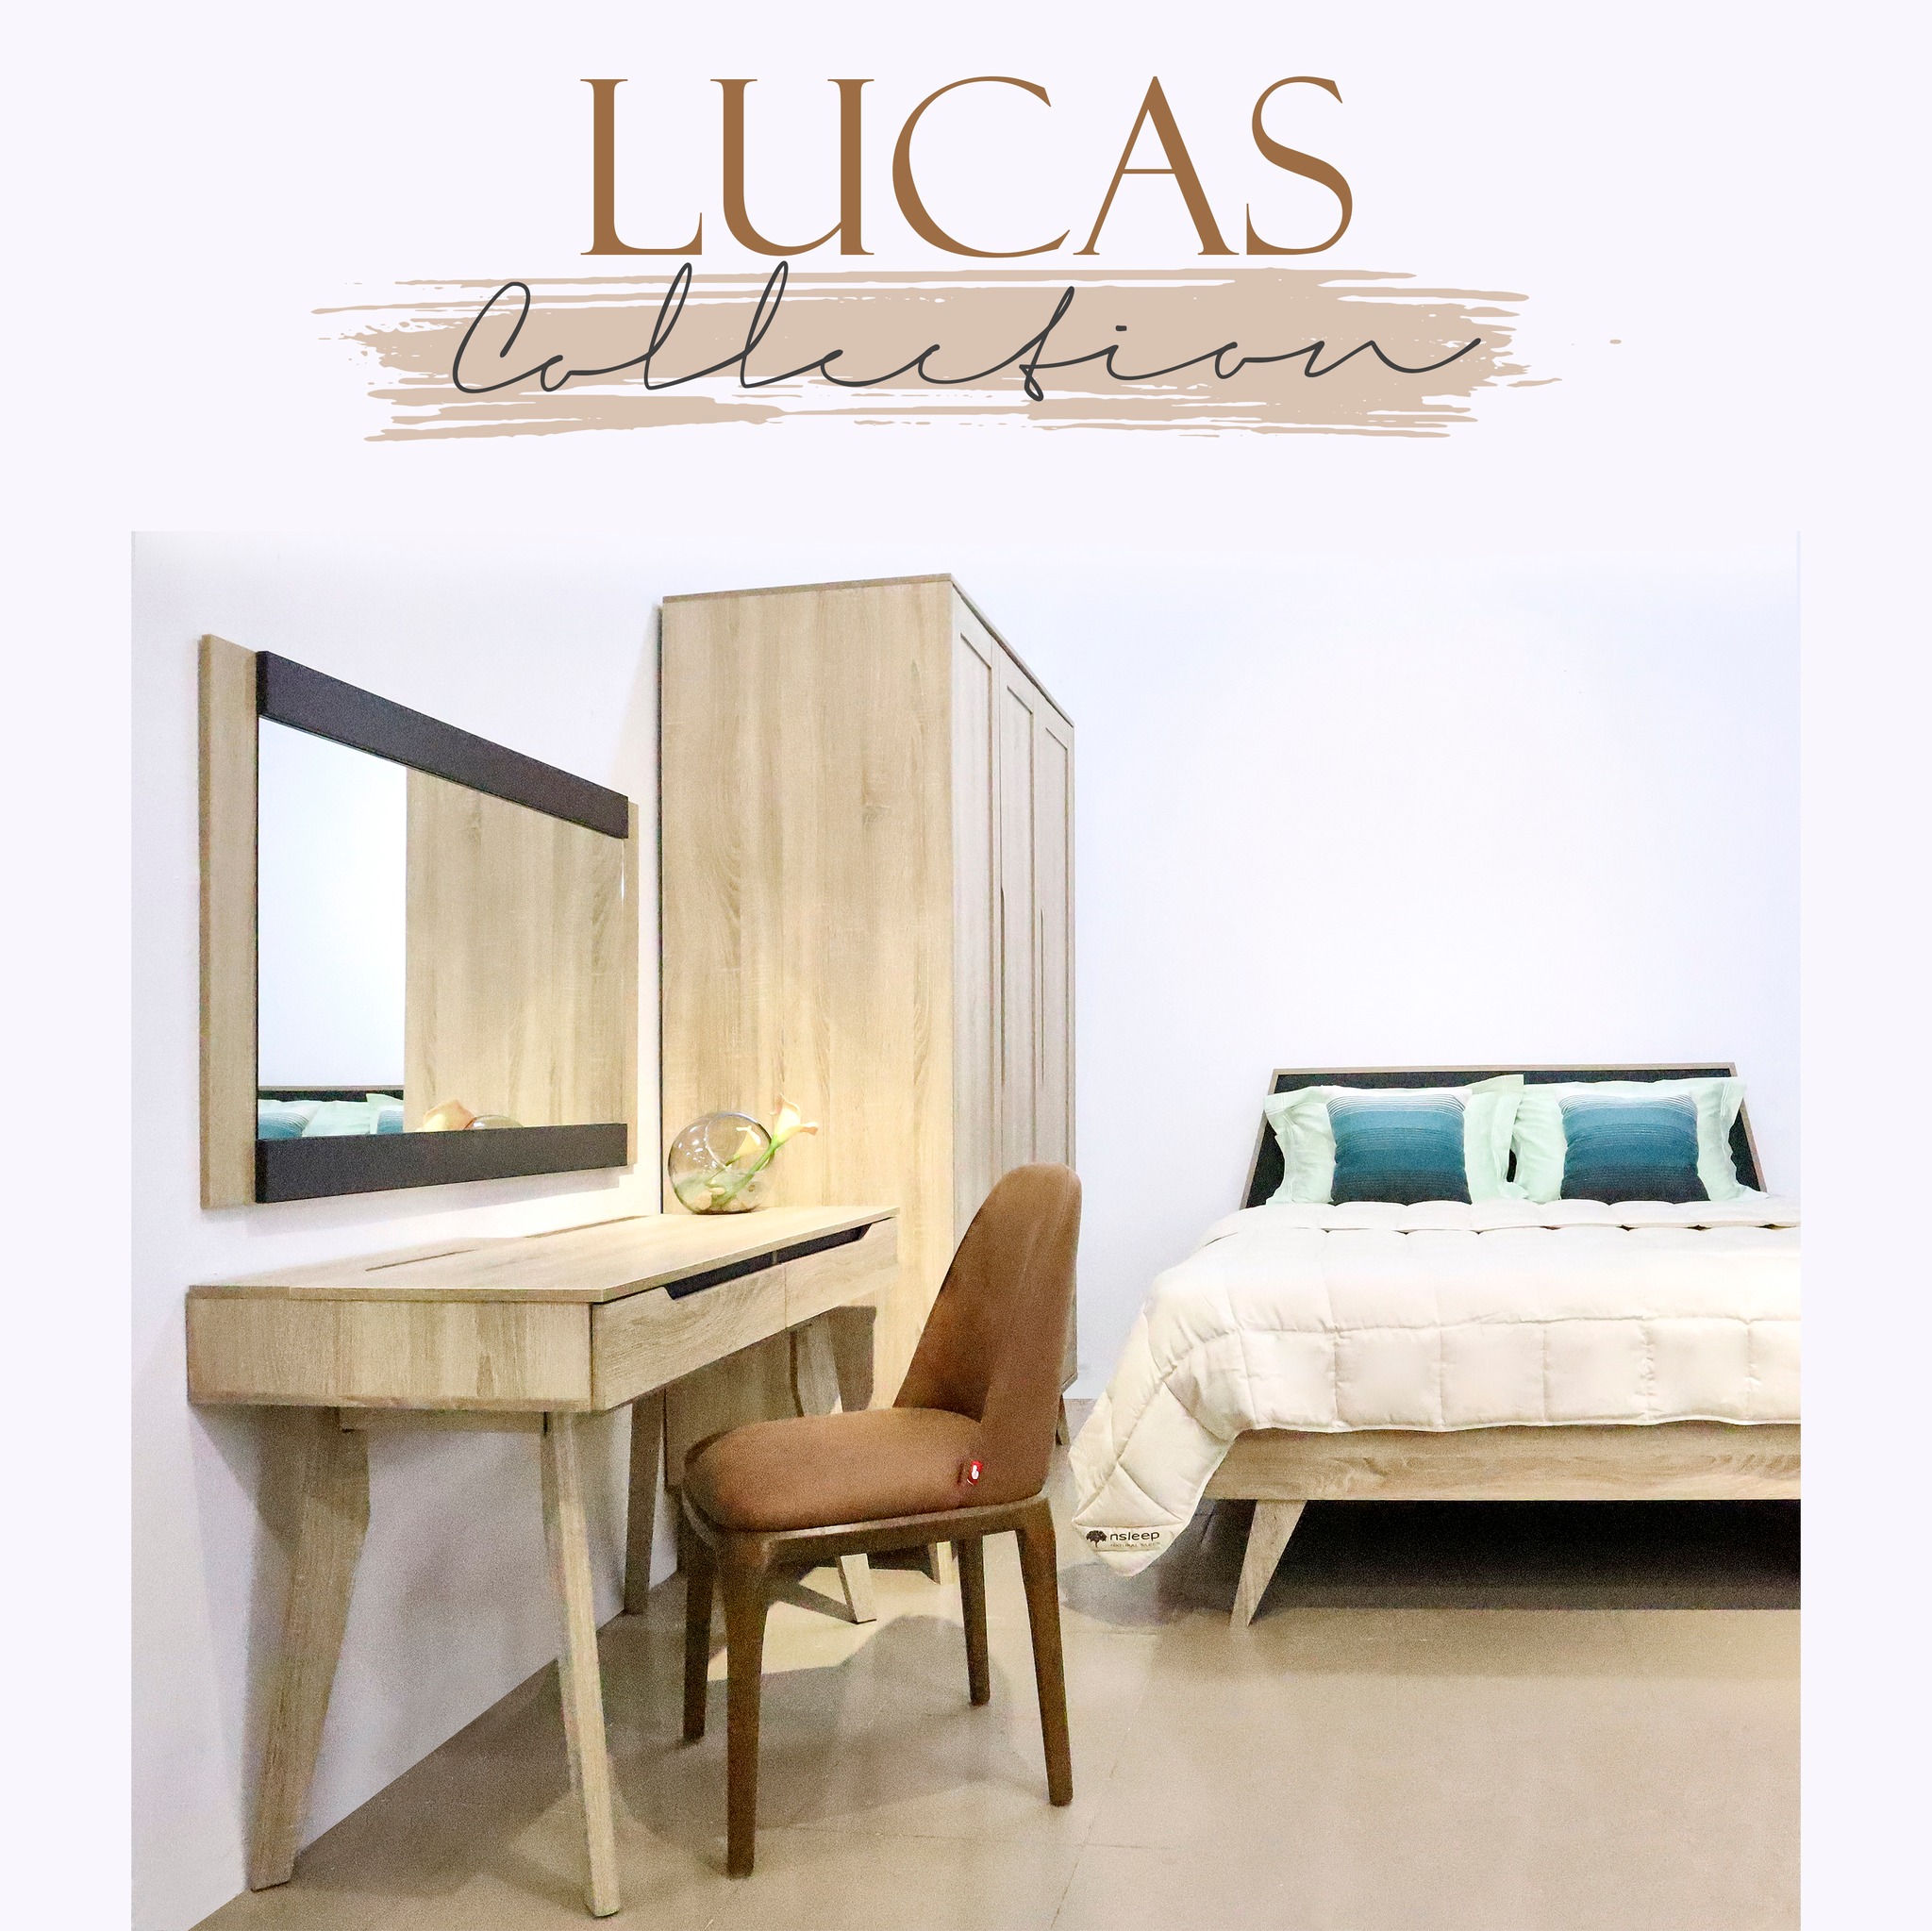 Lucas Collection: 